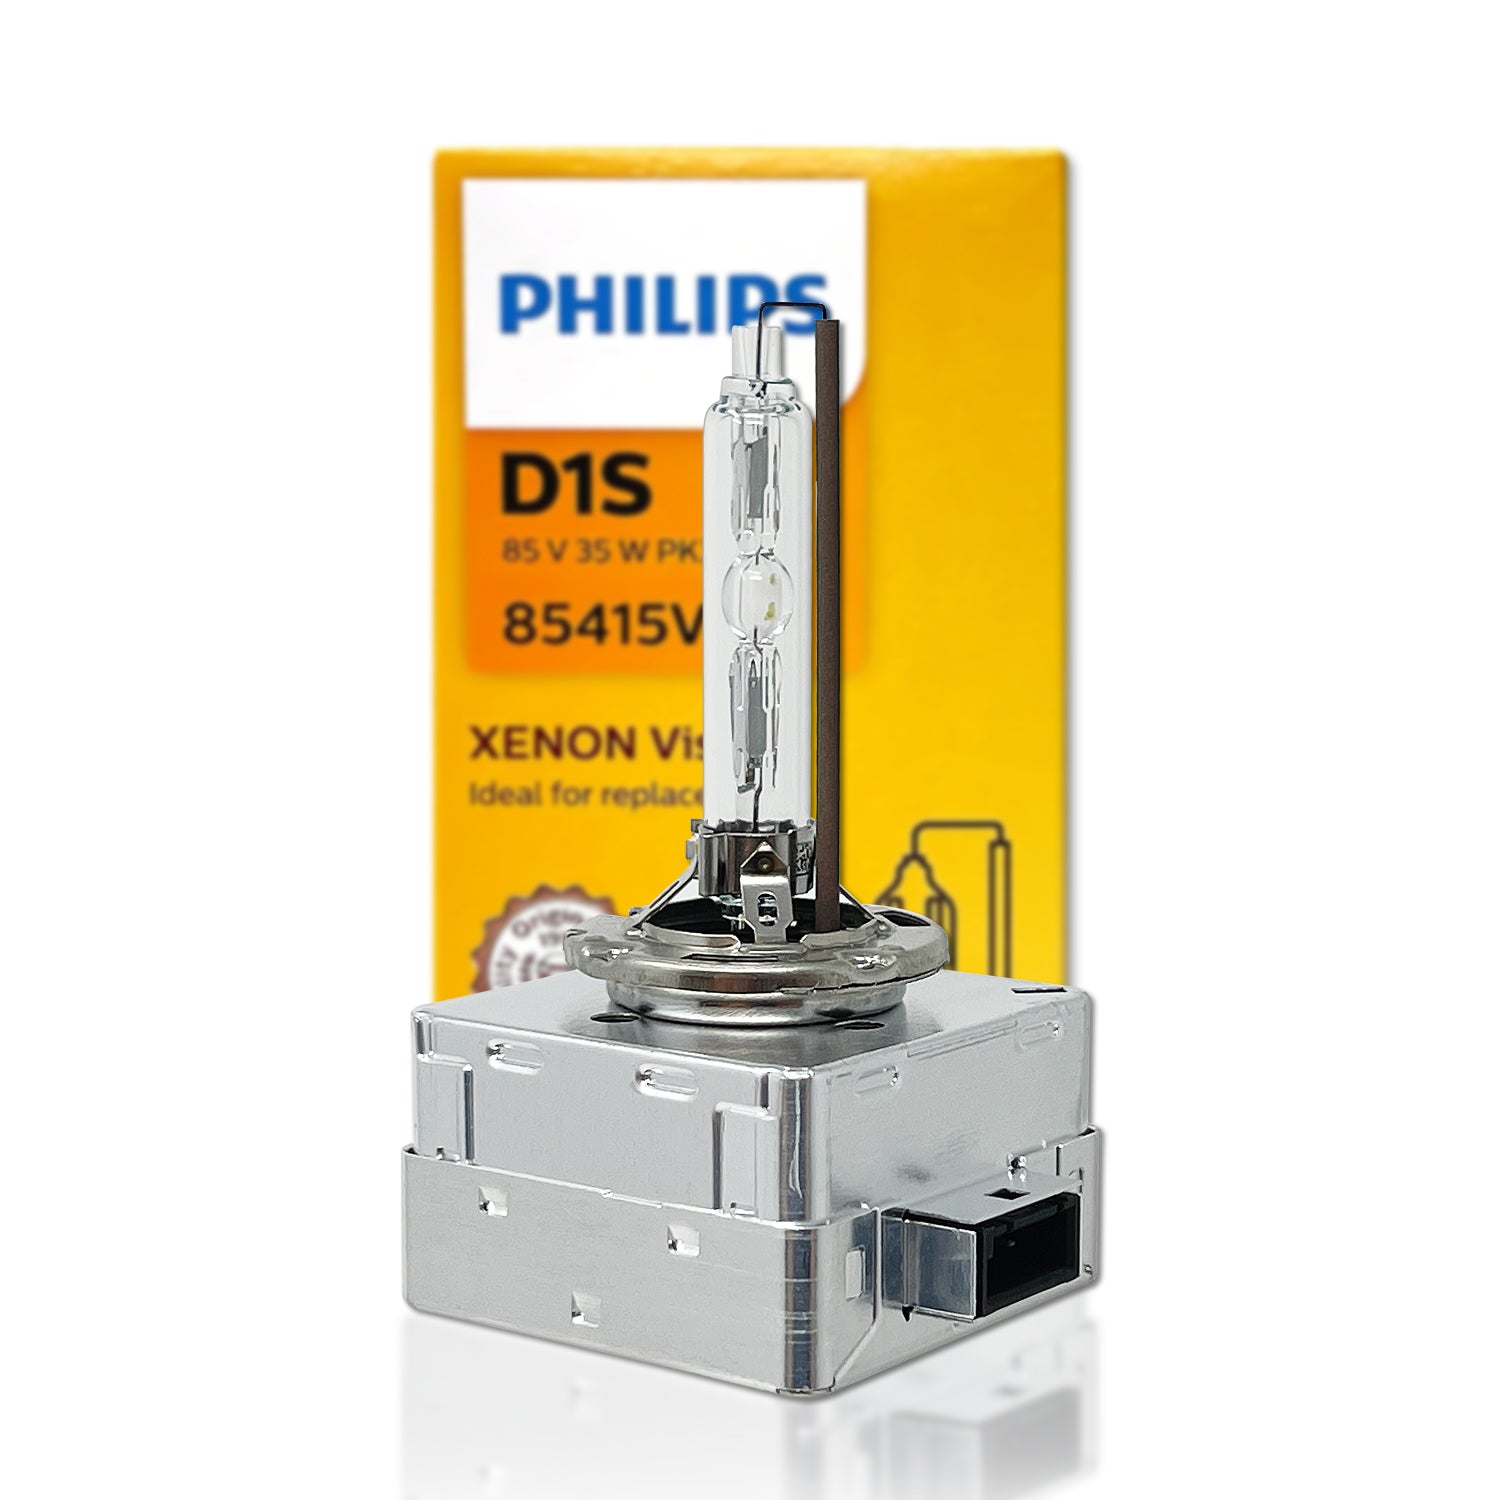 Philips D3S 42403C1 XenStart Standard Xenon Brenner 1St.